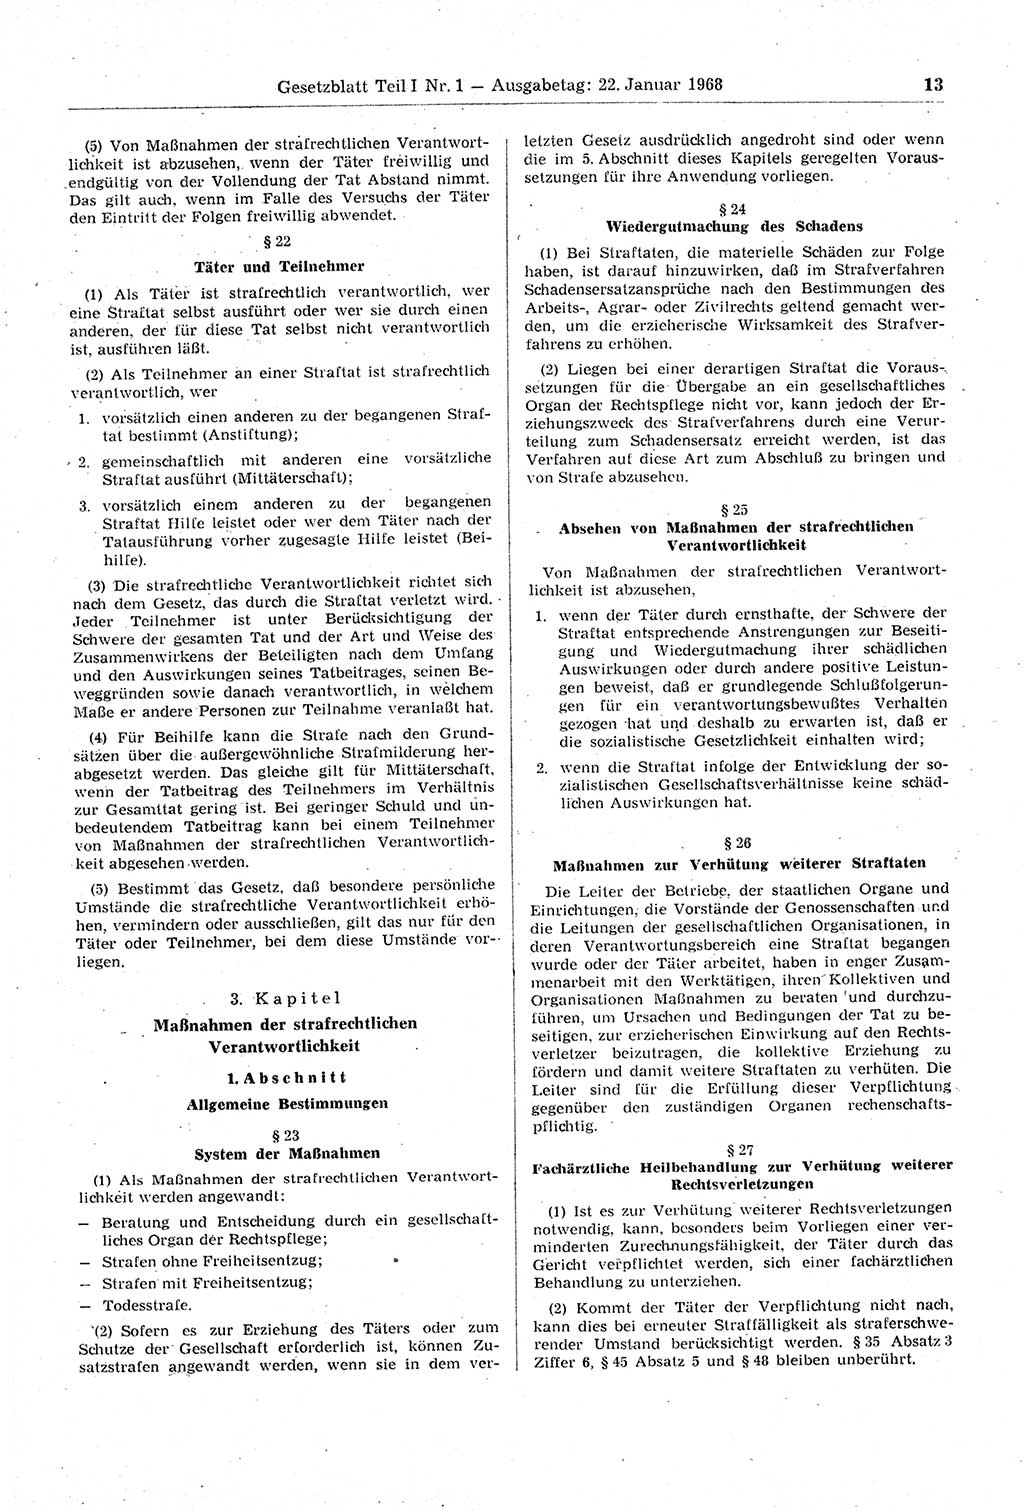 Gesetzblatt (GBl.) der Deutschen Demokratischen Republik (DDR) Teil Ⅰ 1968, Seite 13 (GBl. DDR Ⅰ 1968, S. 13)